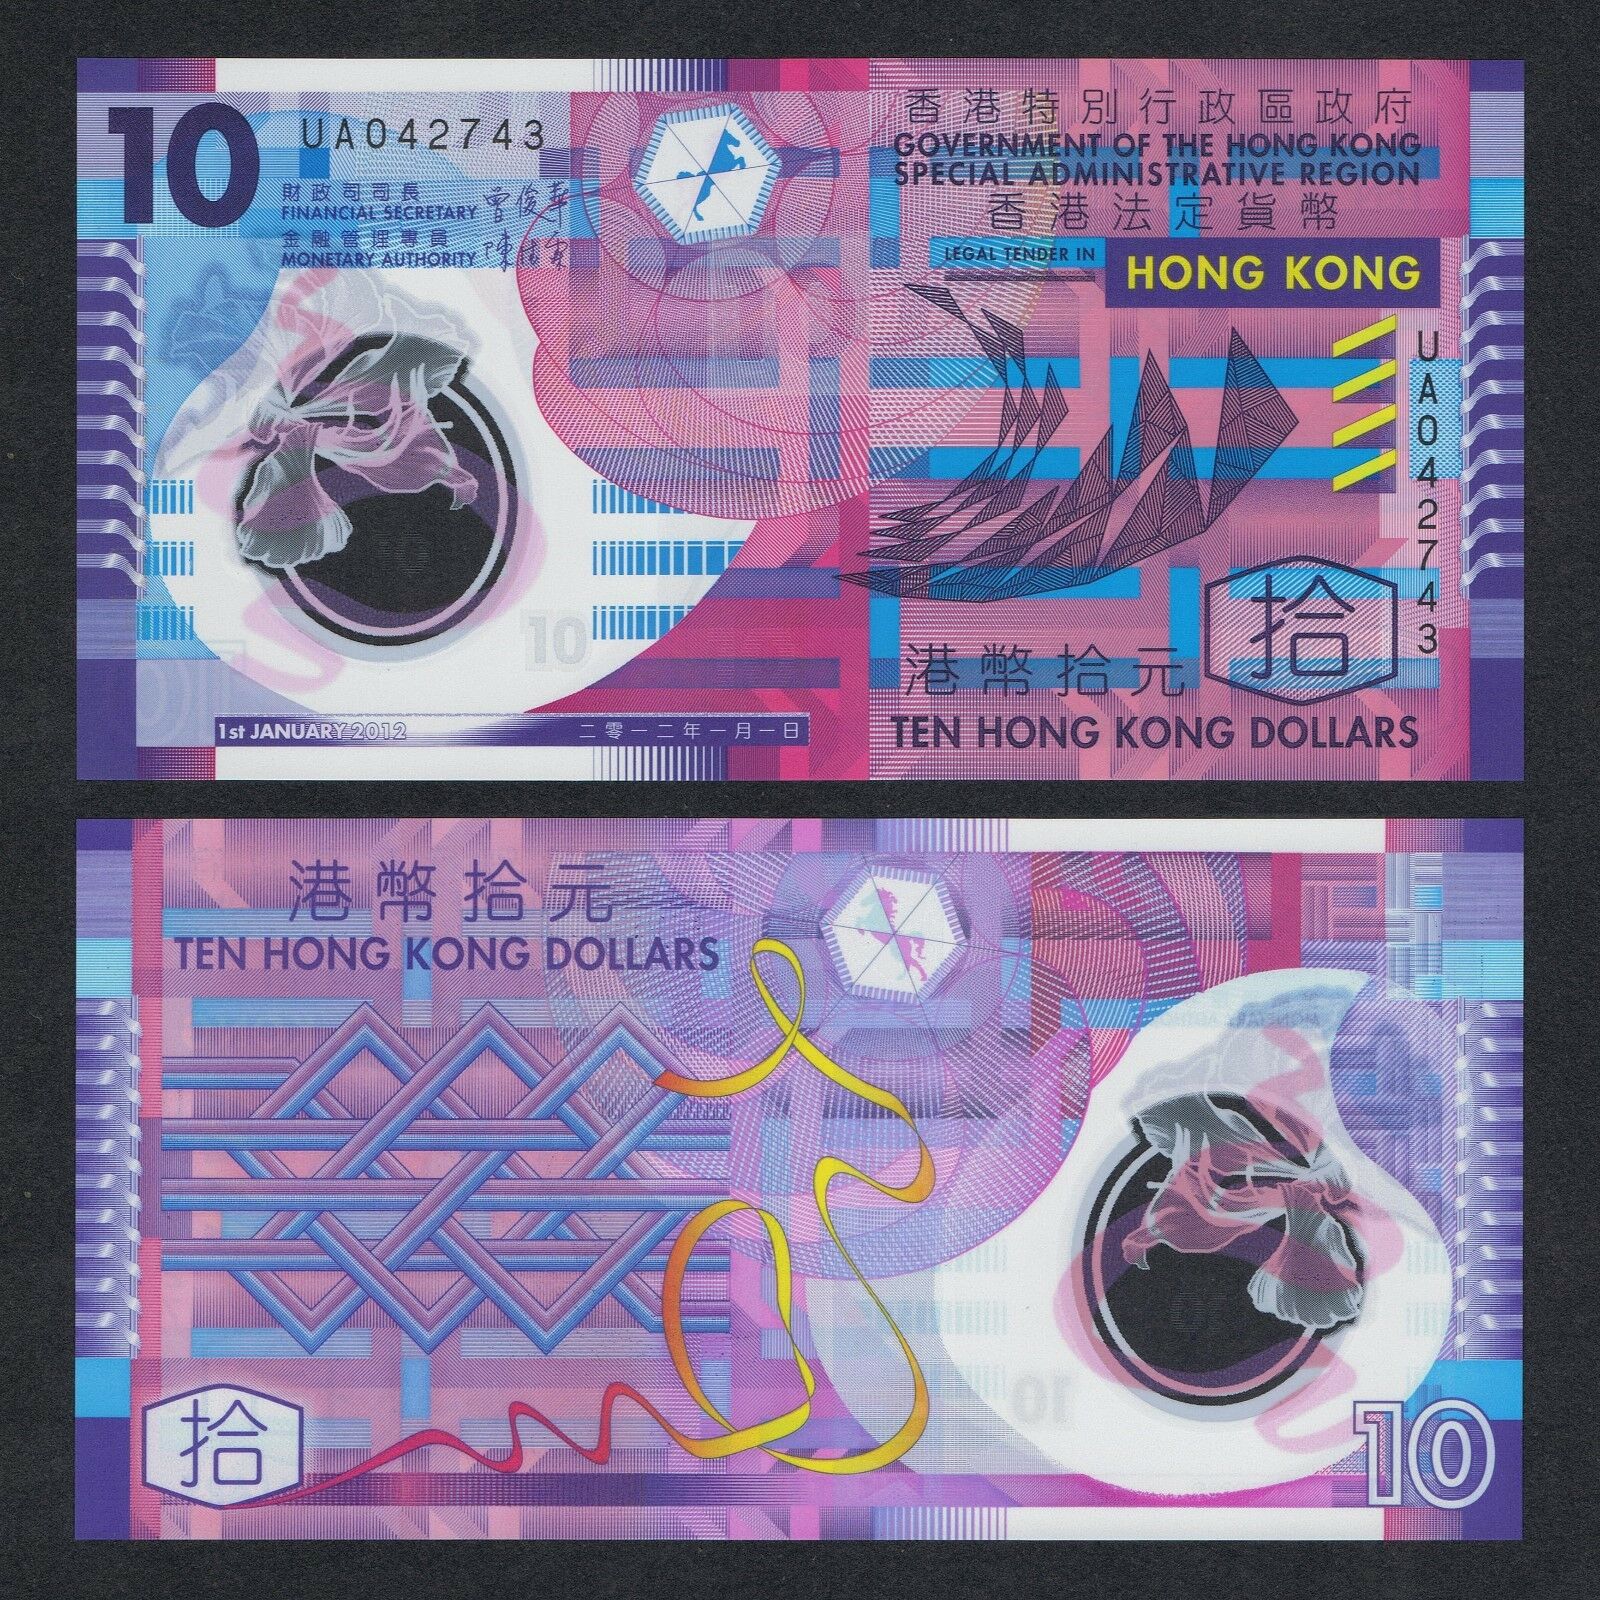 Tiền polymer Hong Kong mệnh giá 10 dollars đẹp nhất thế giới, mới cứng, tặng kèm bao nilong bảo quản